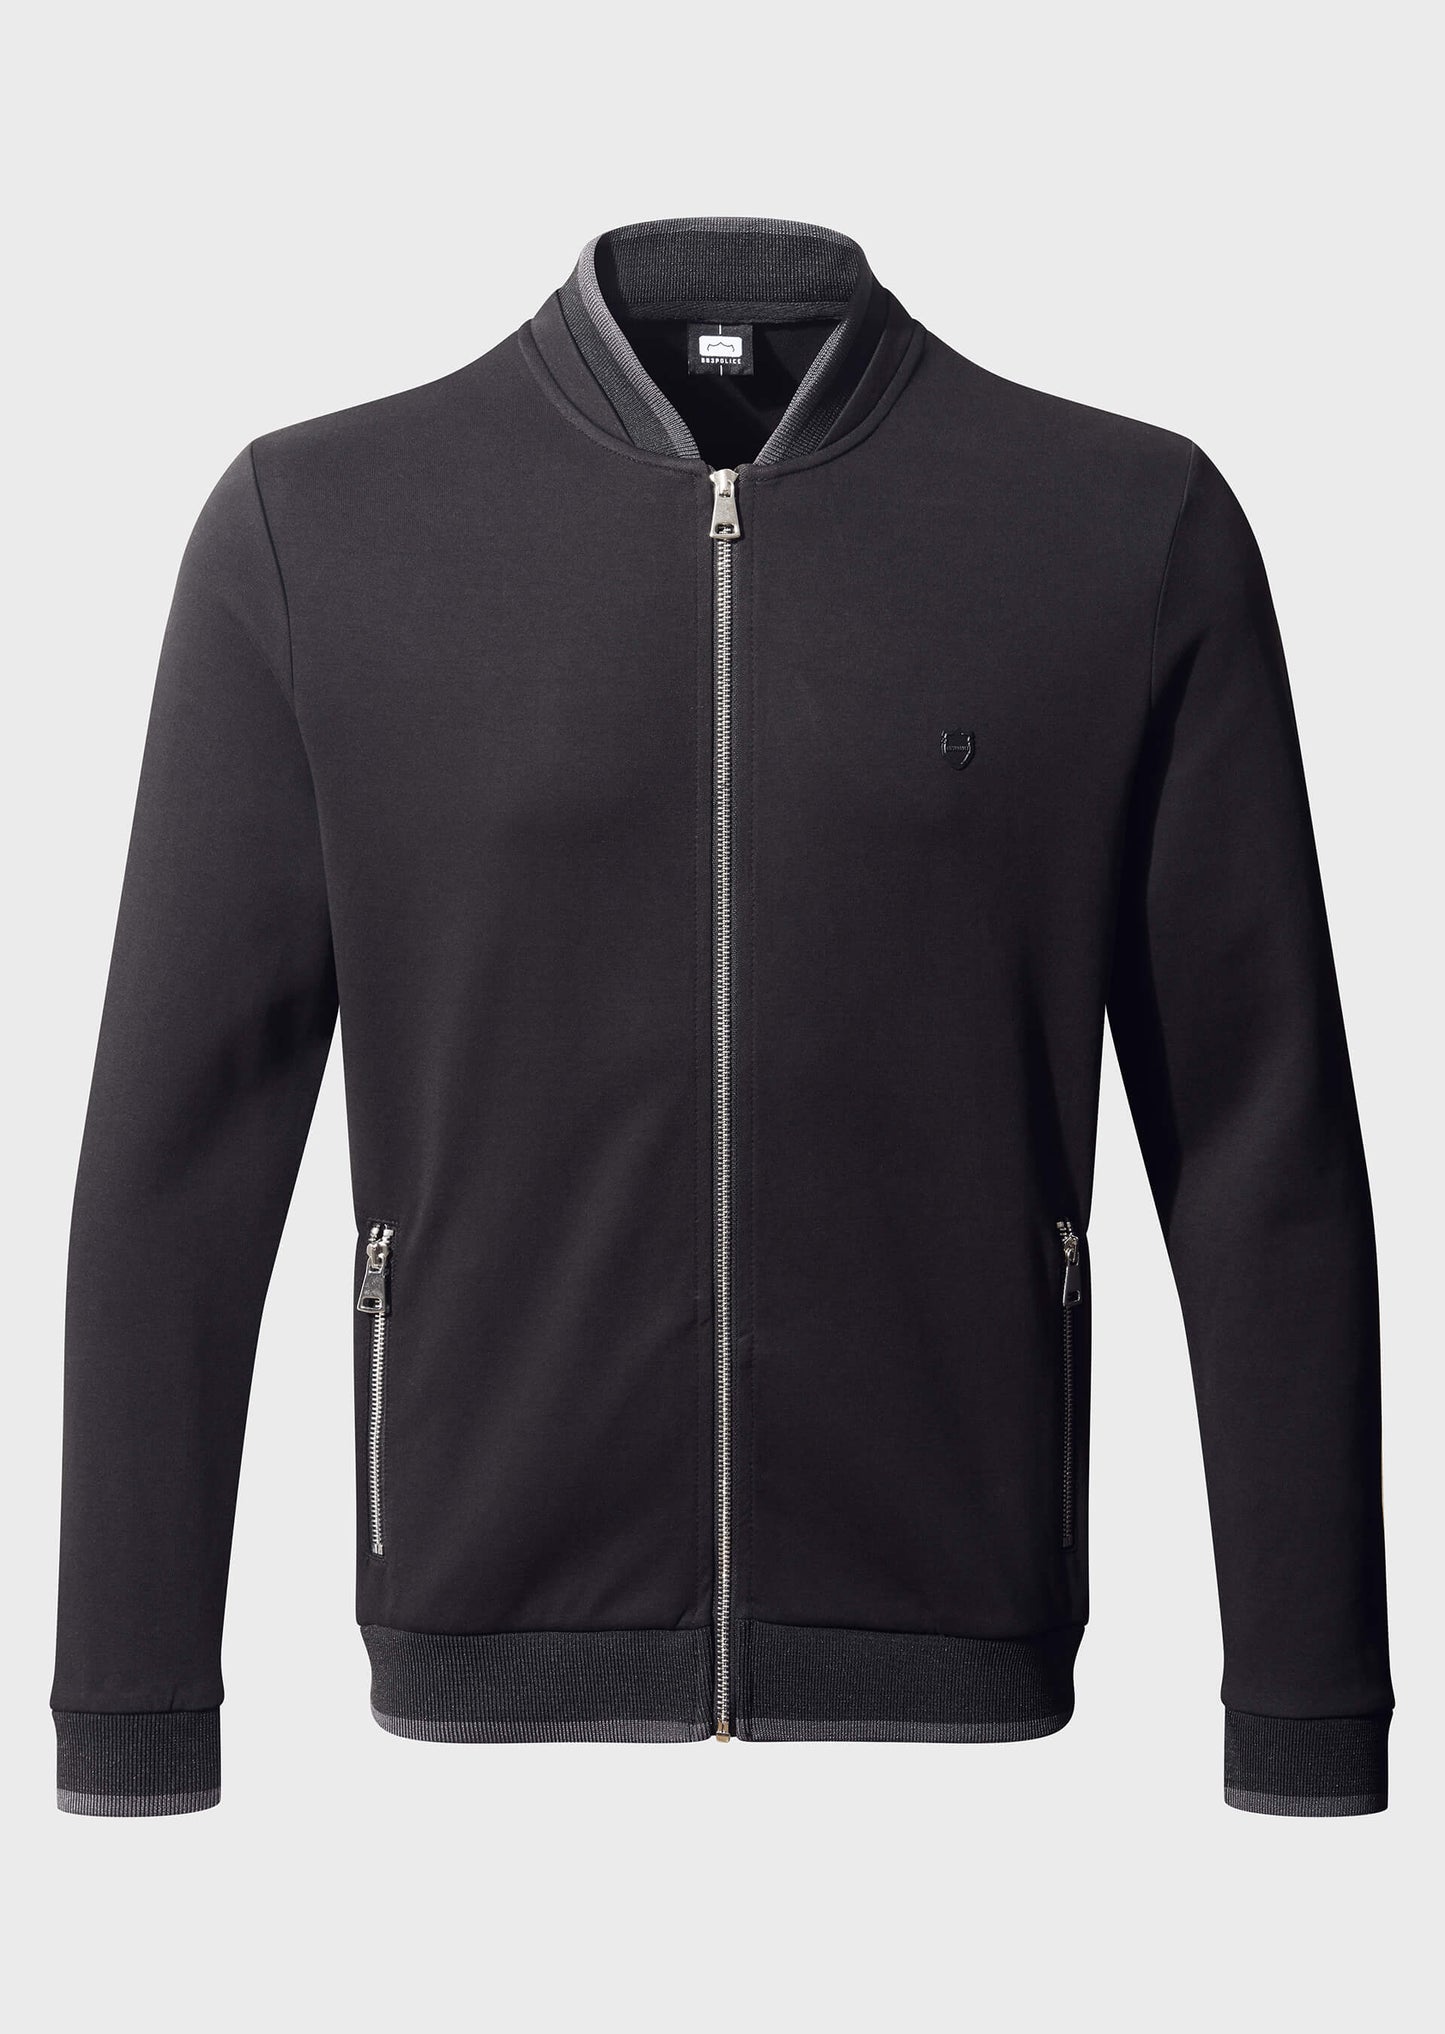 Neutra Black Zip-Up Sweatshirt